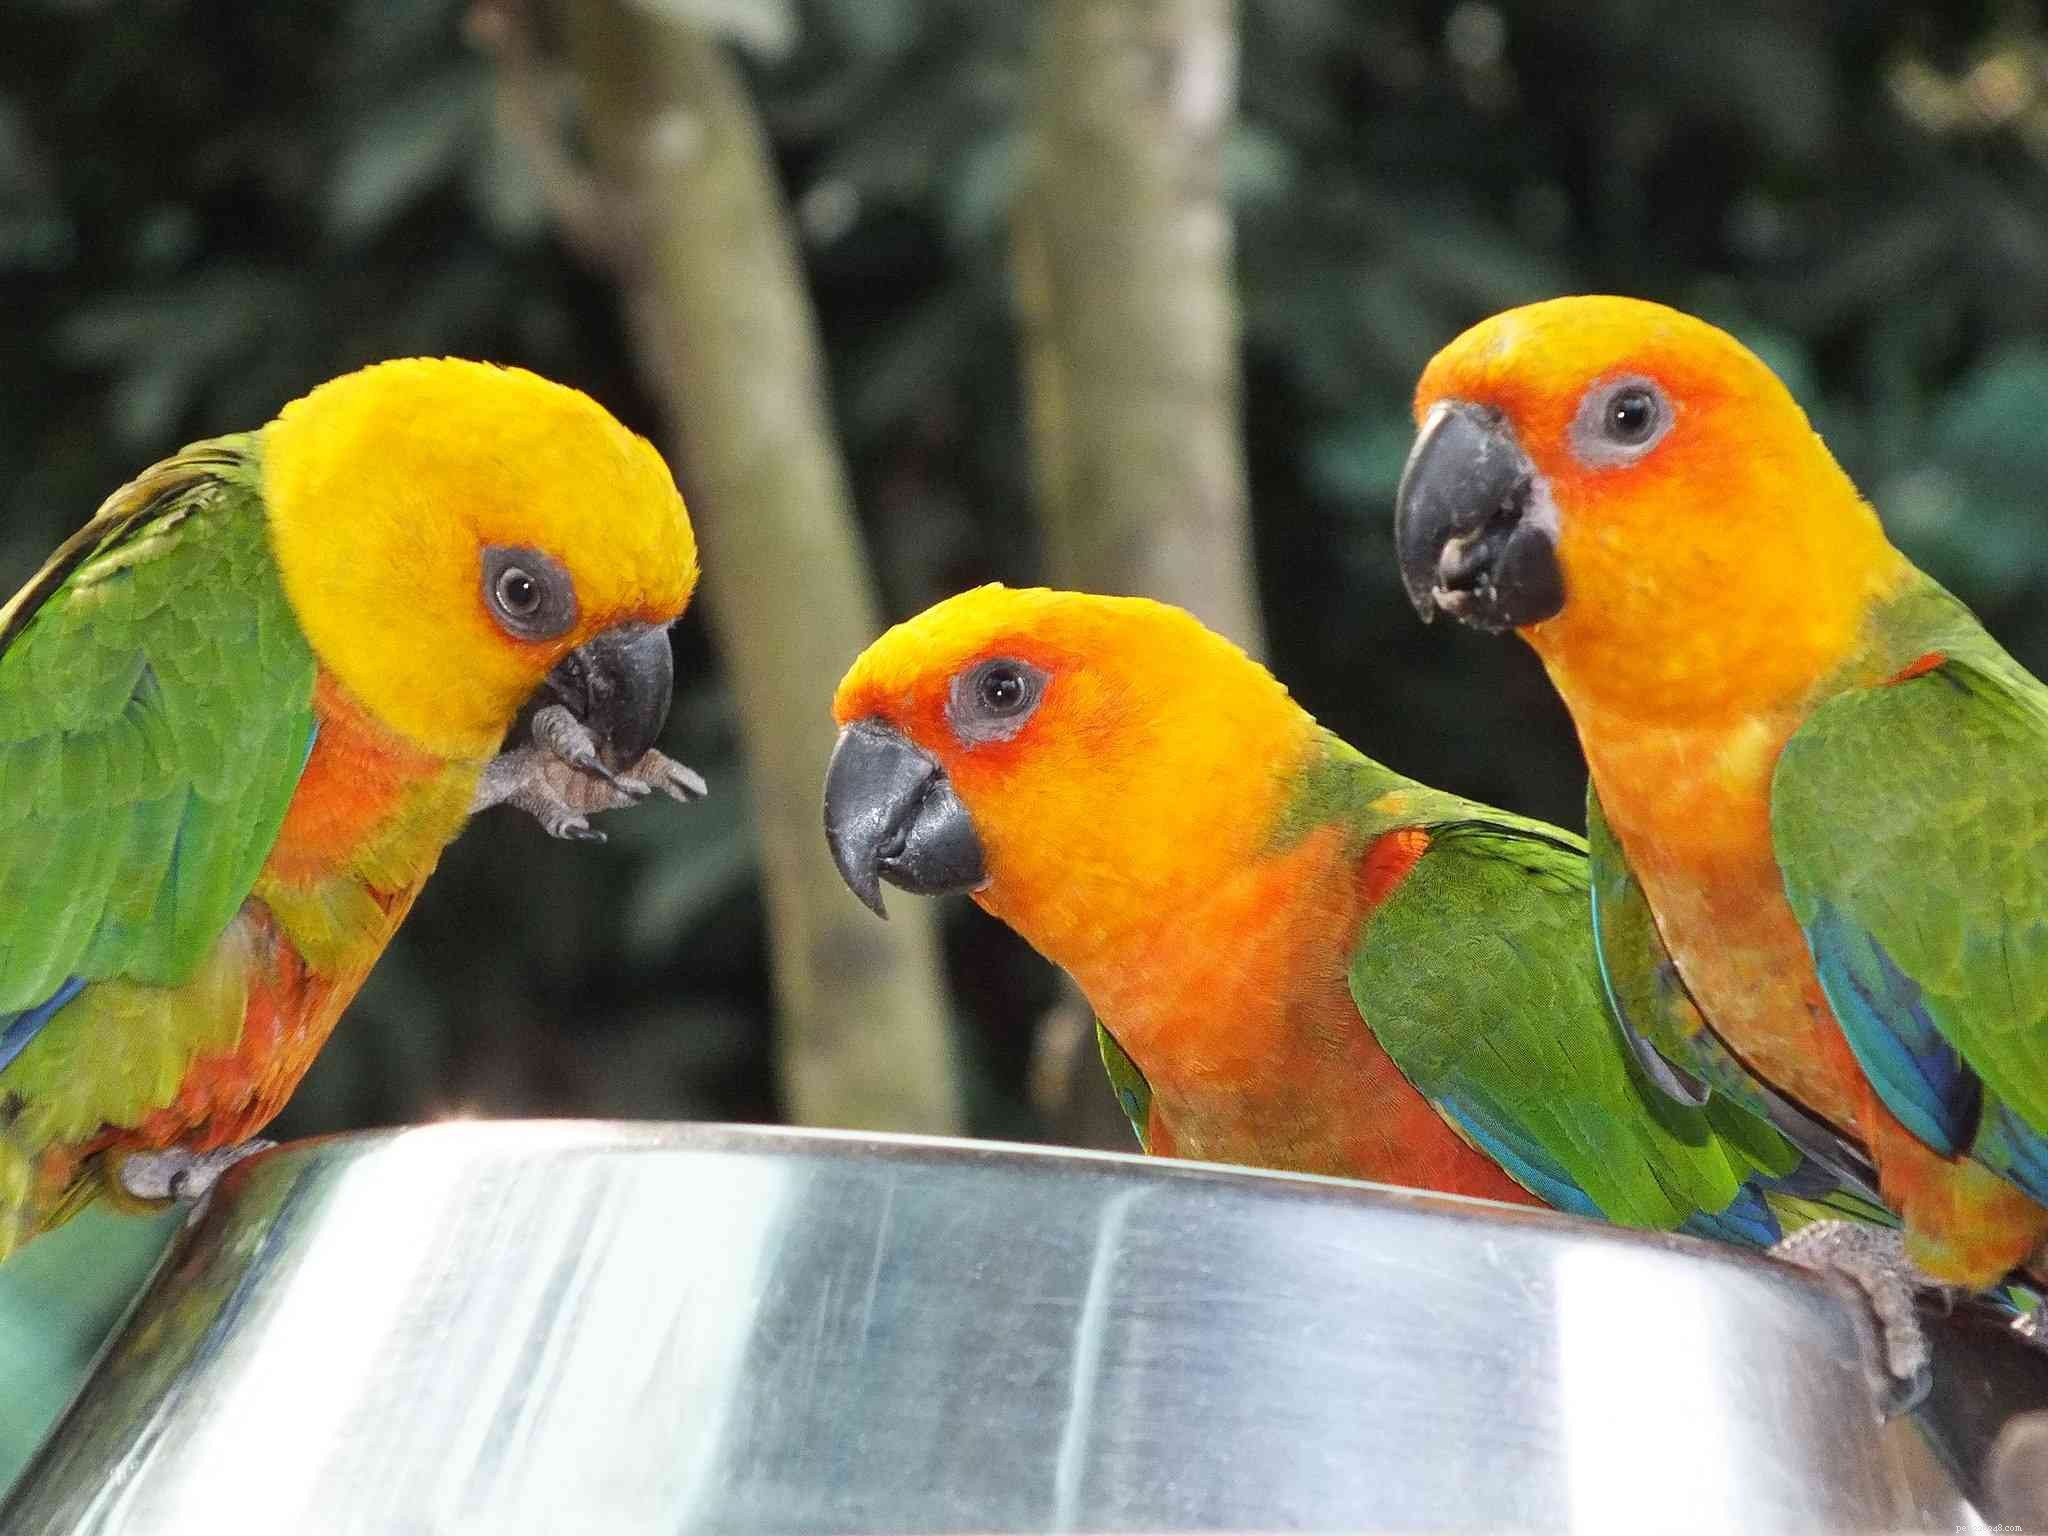 Druhy malých papoušků